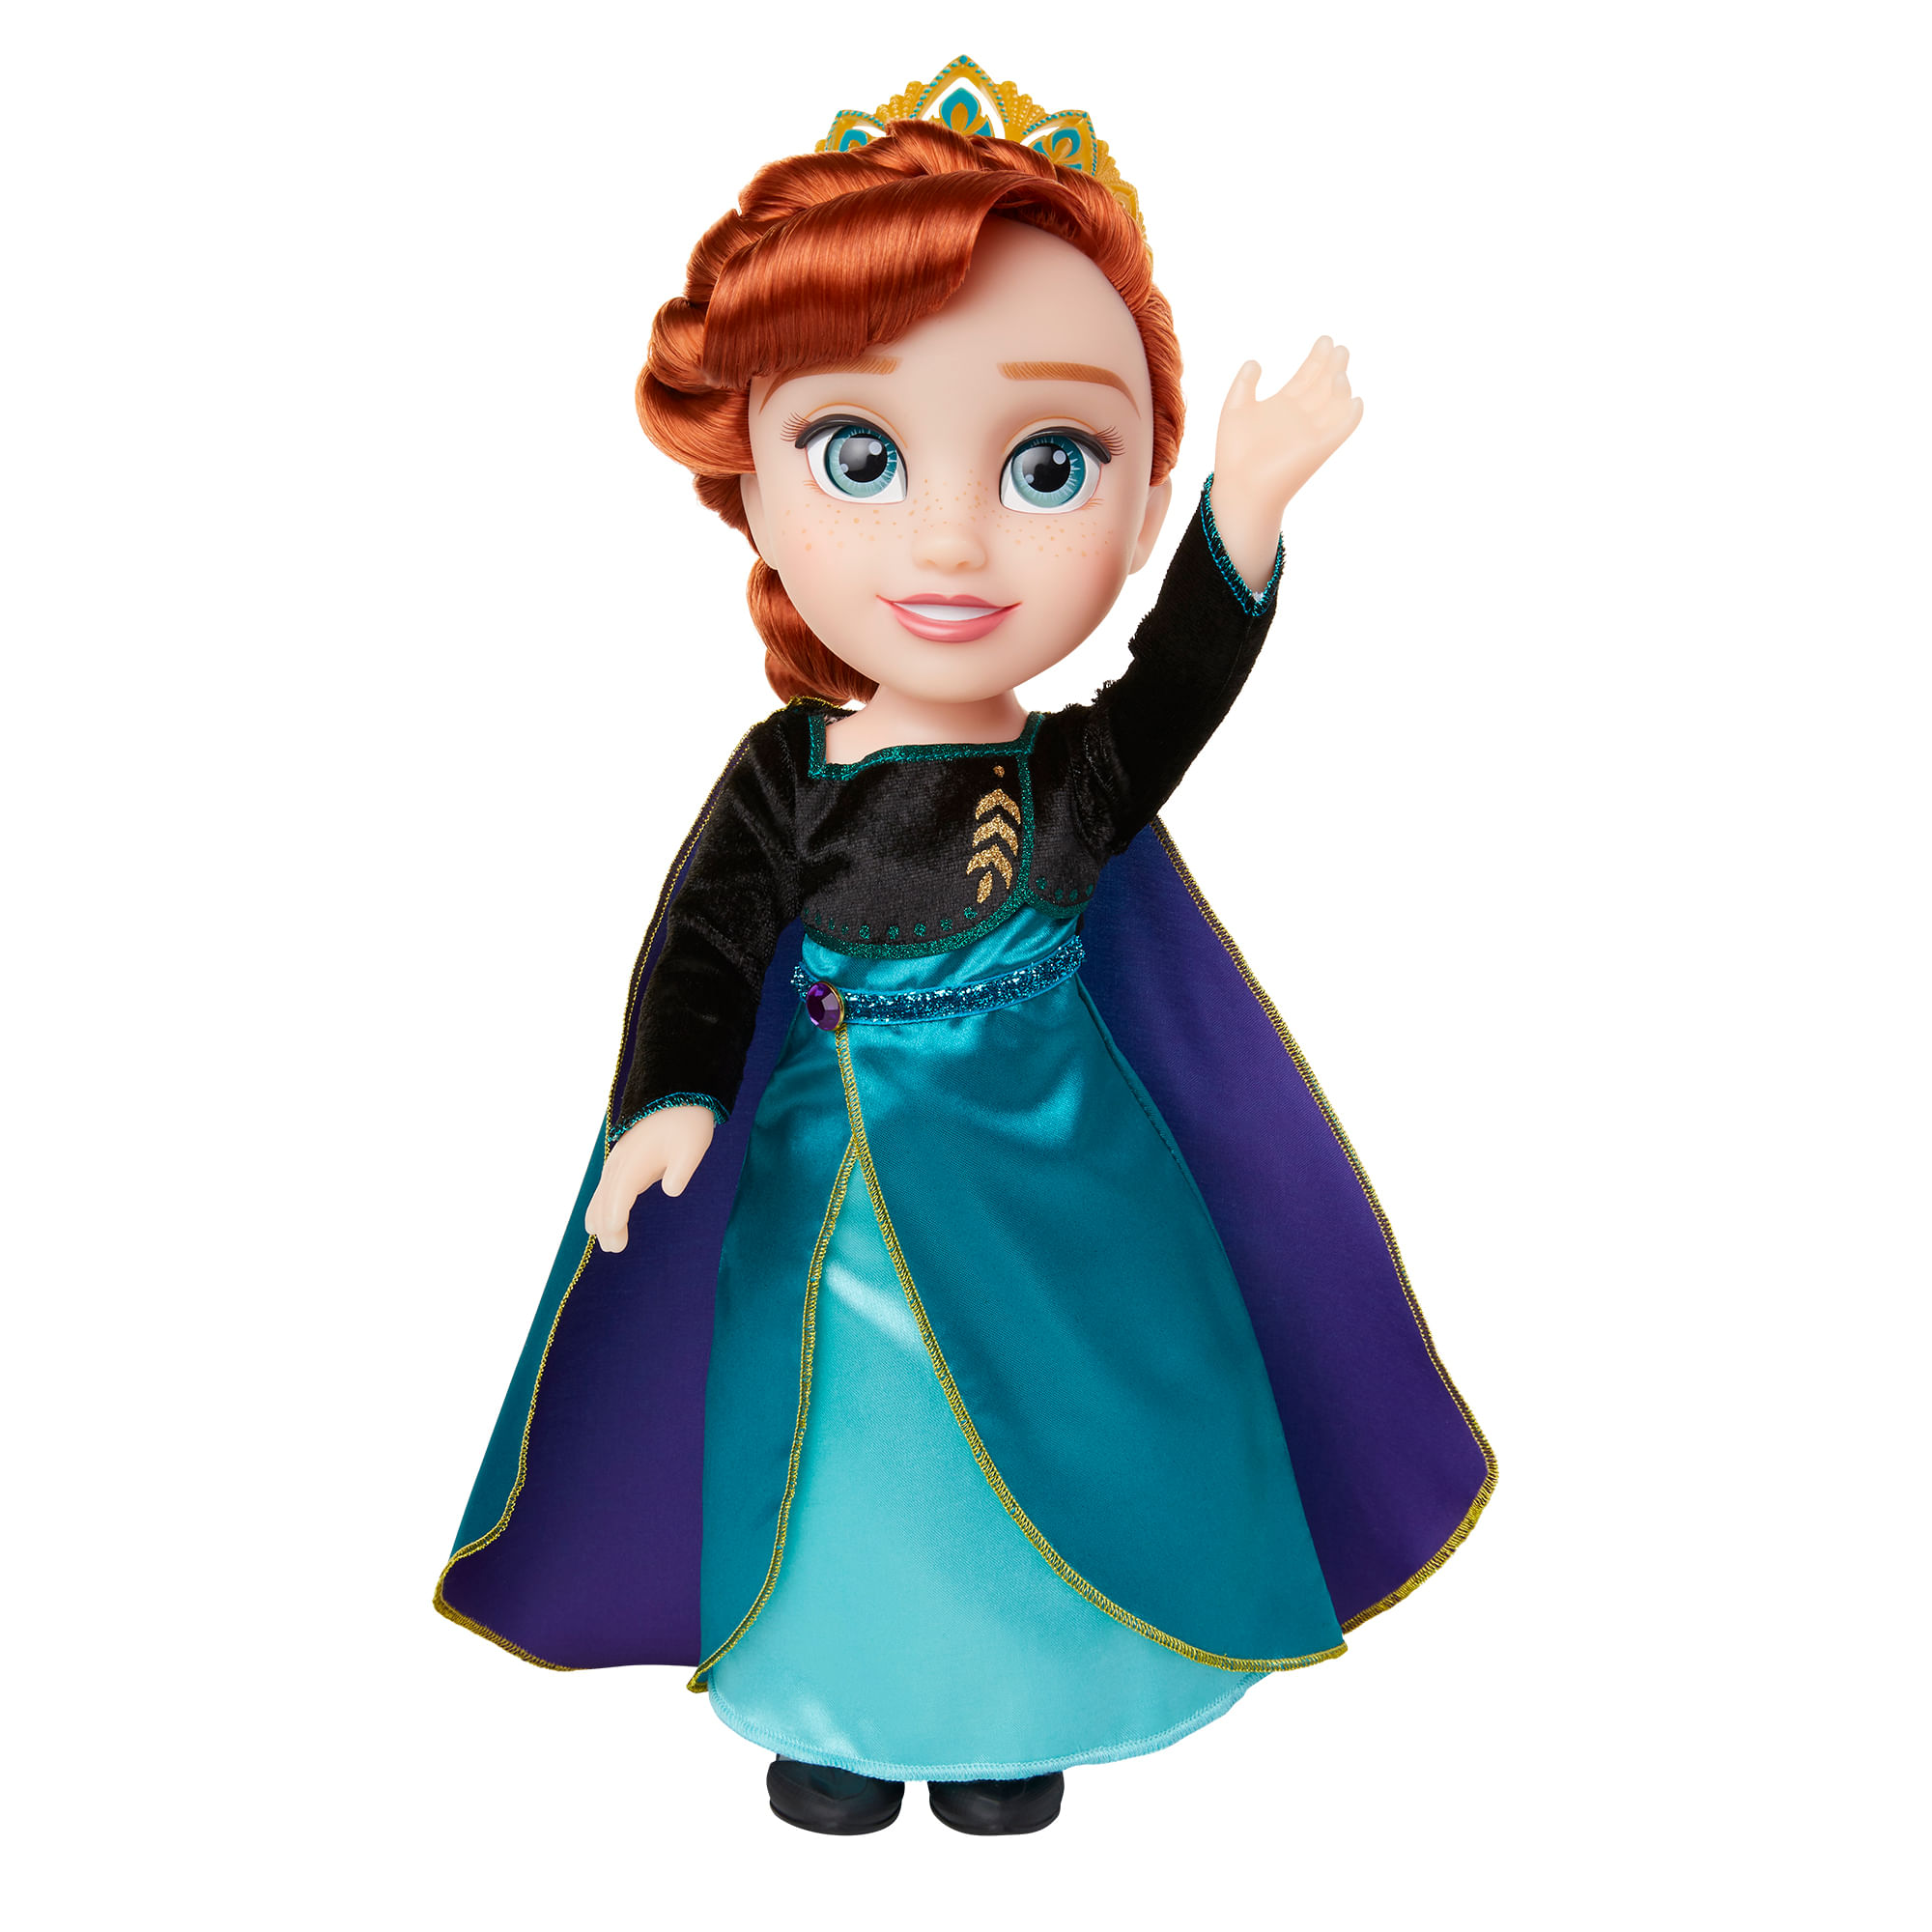 Boneca Disney Frozen Anna com Acessrios e Roupinha Multikids - BR1931